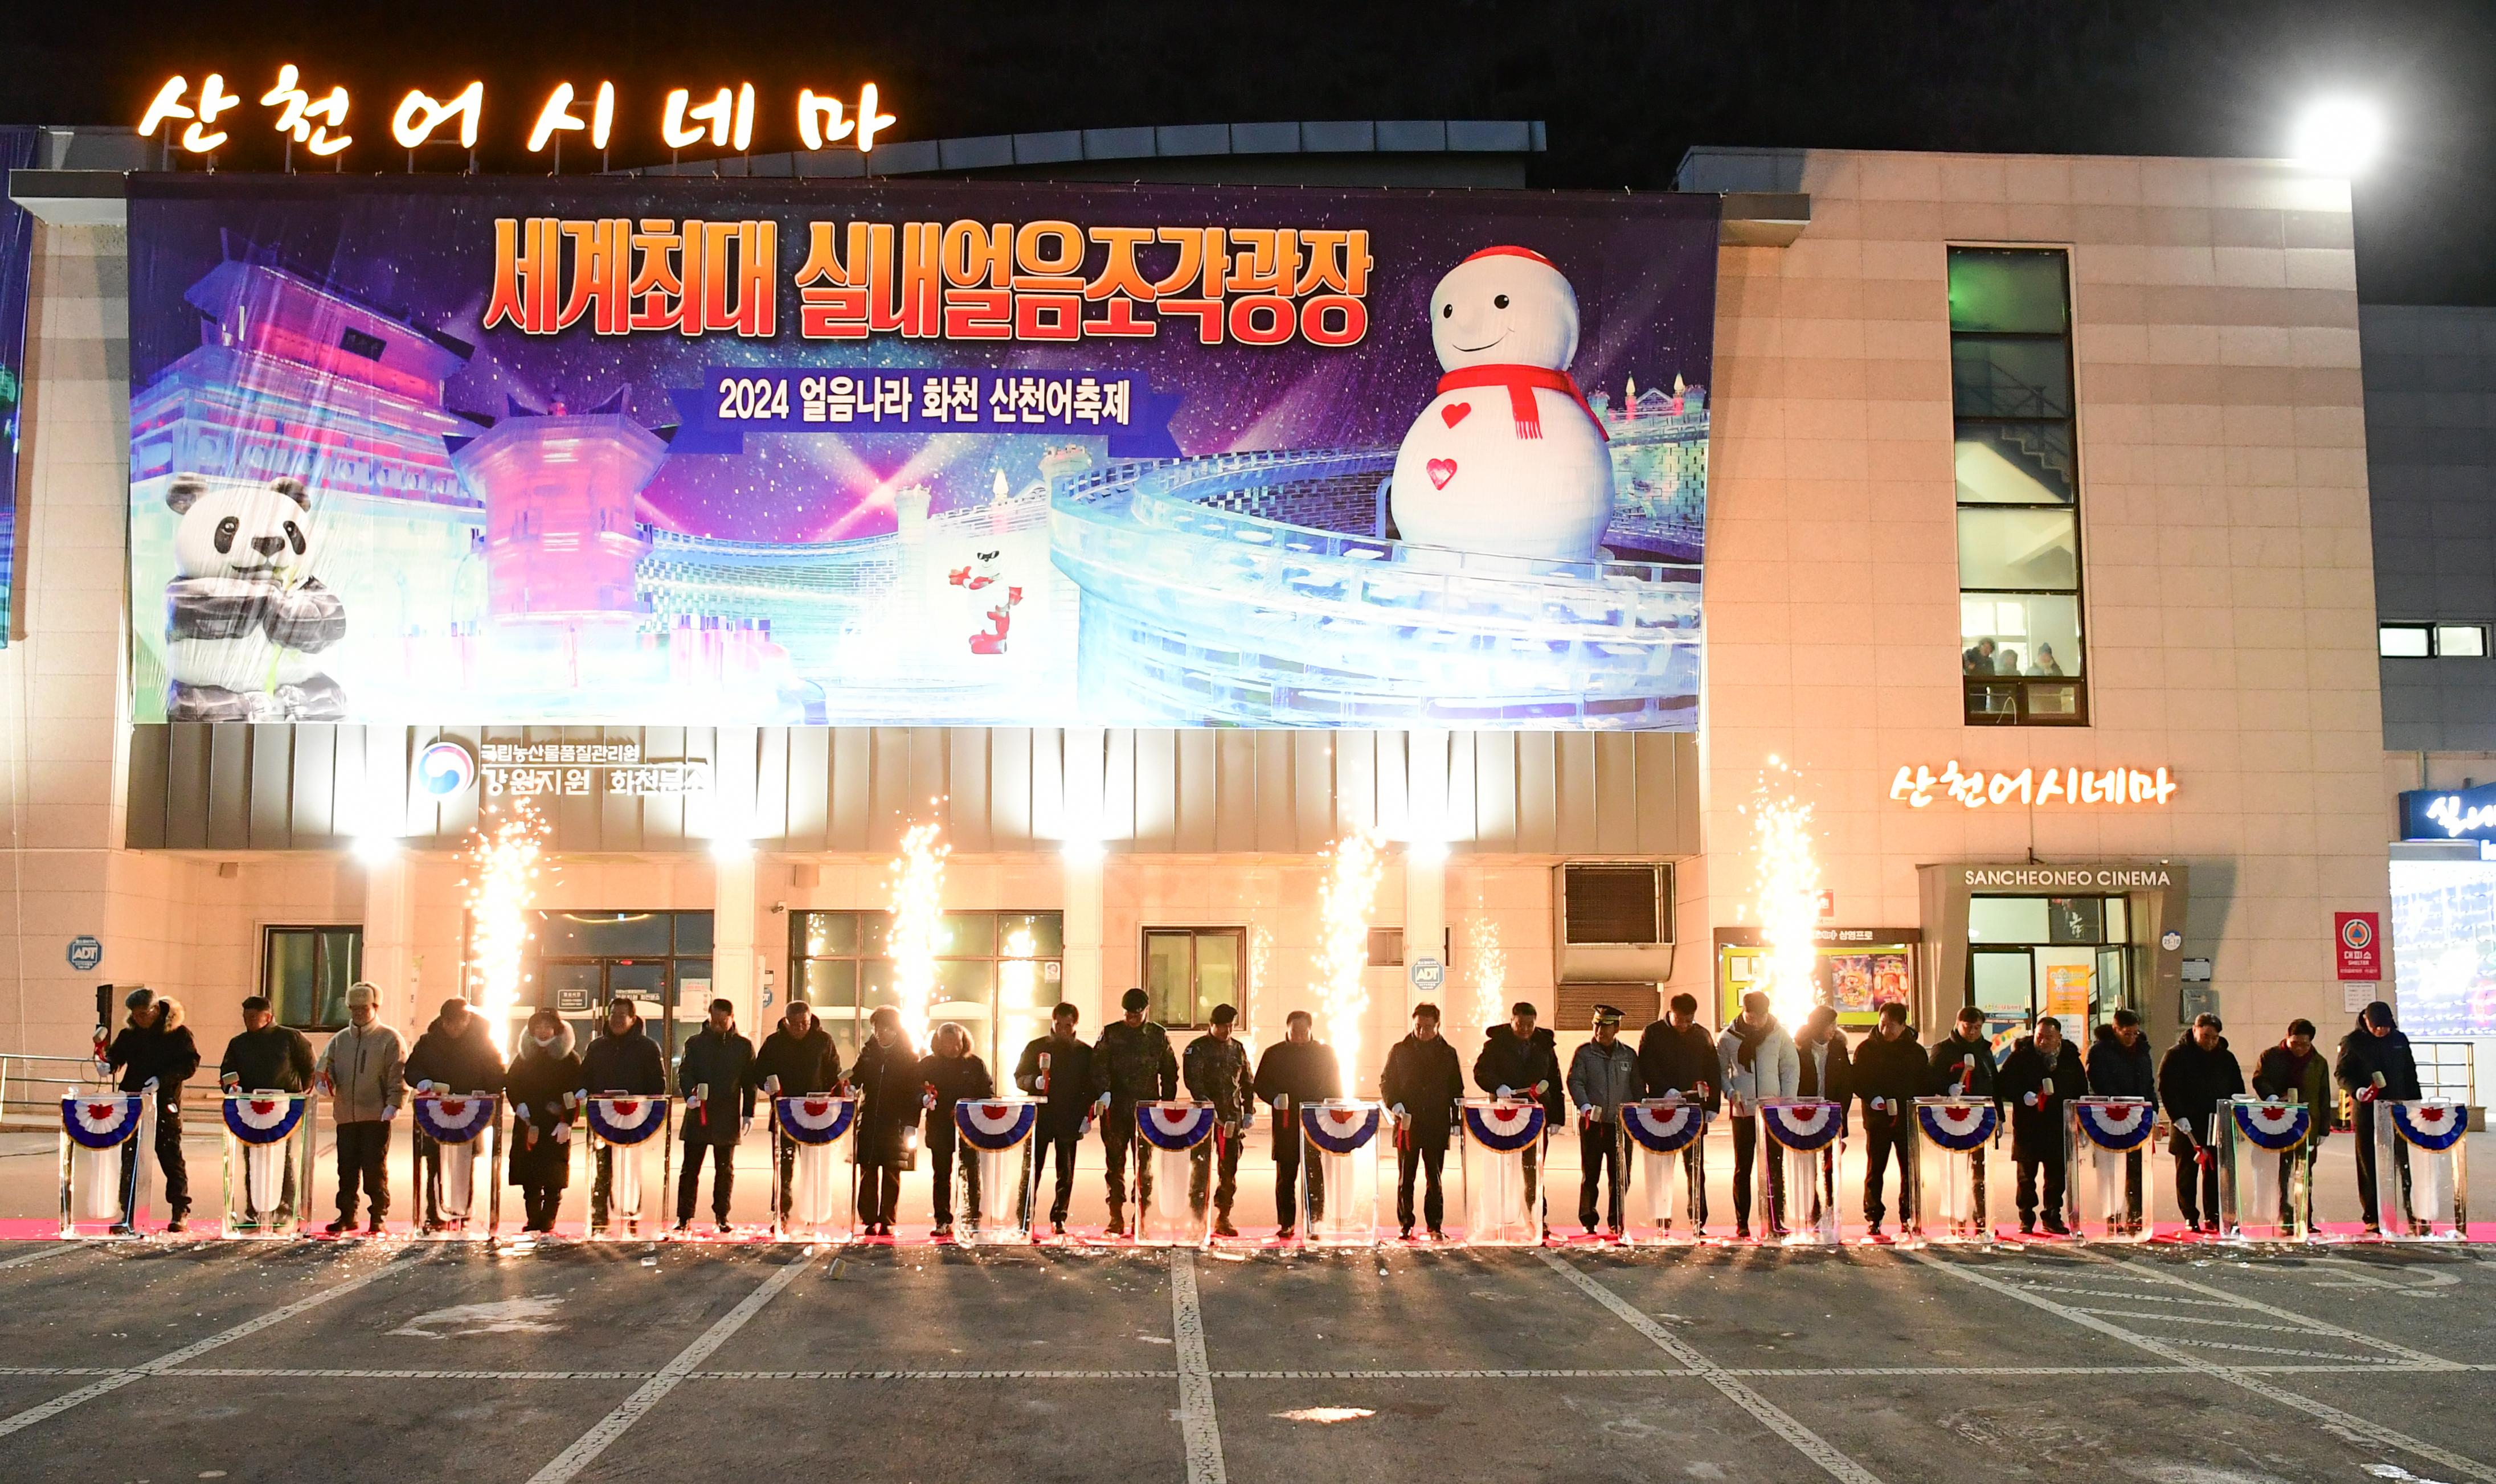 2023 세계최대 실내얼음조각광장 타빙식 사진